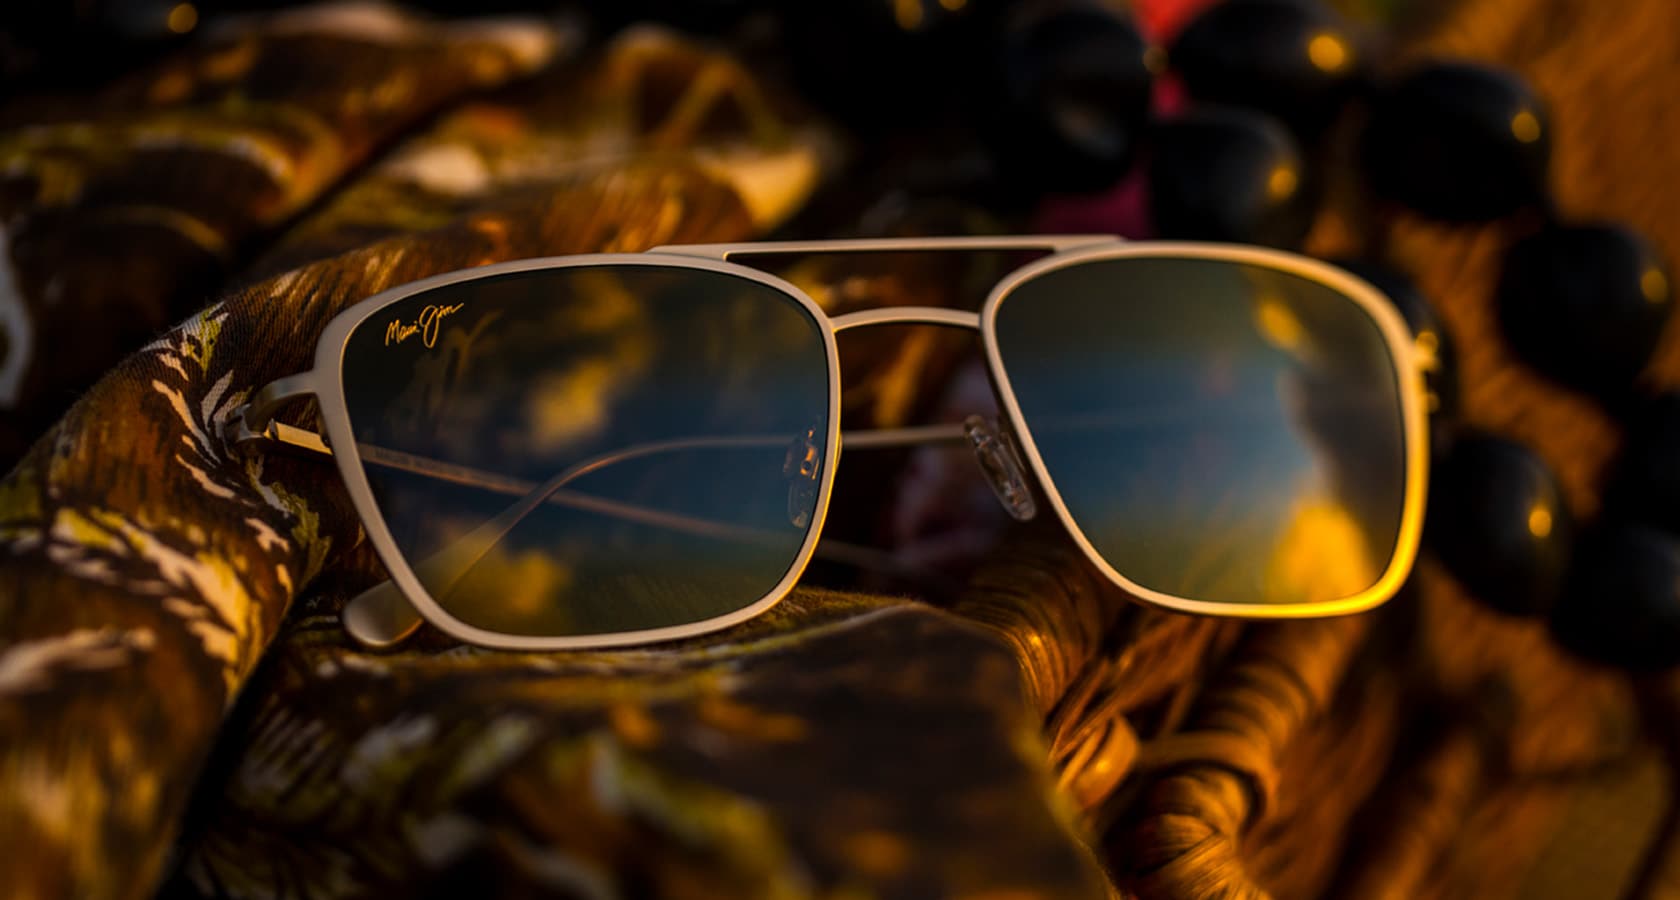 Sonnenbrille in mattem Titan auf Korb